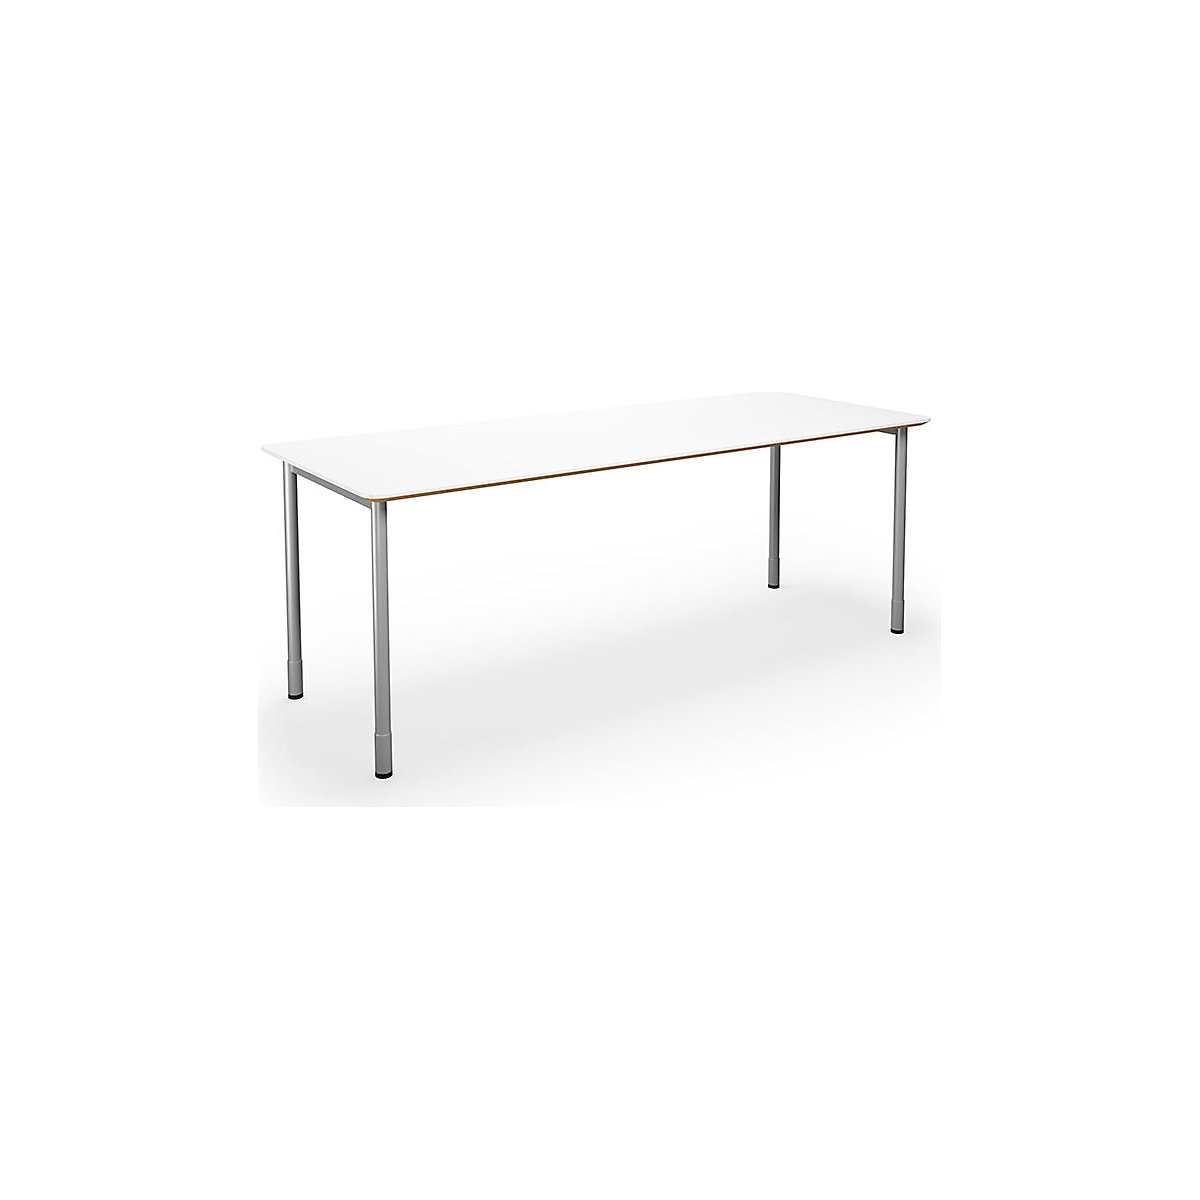 DUO-C Trend univerzális asztal, egyenes asztallappal, lekerekített sarkokkal